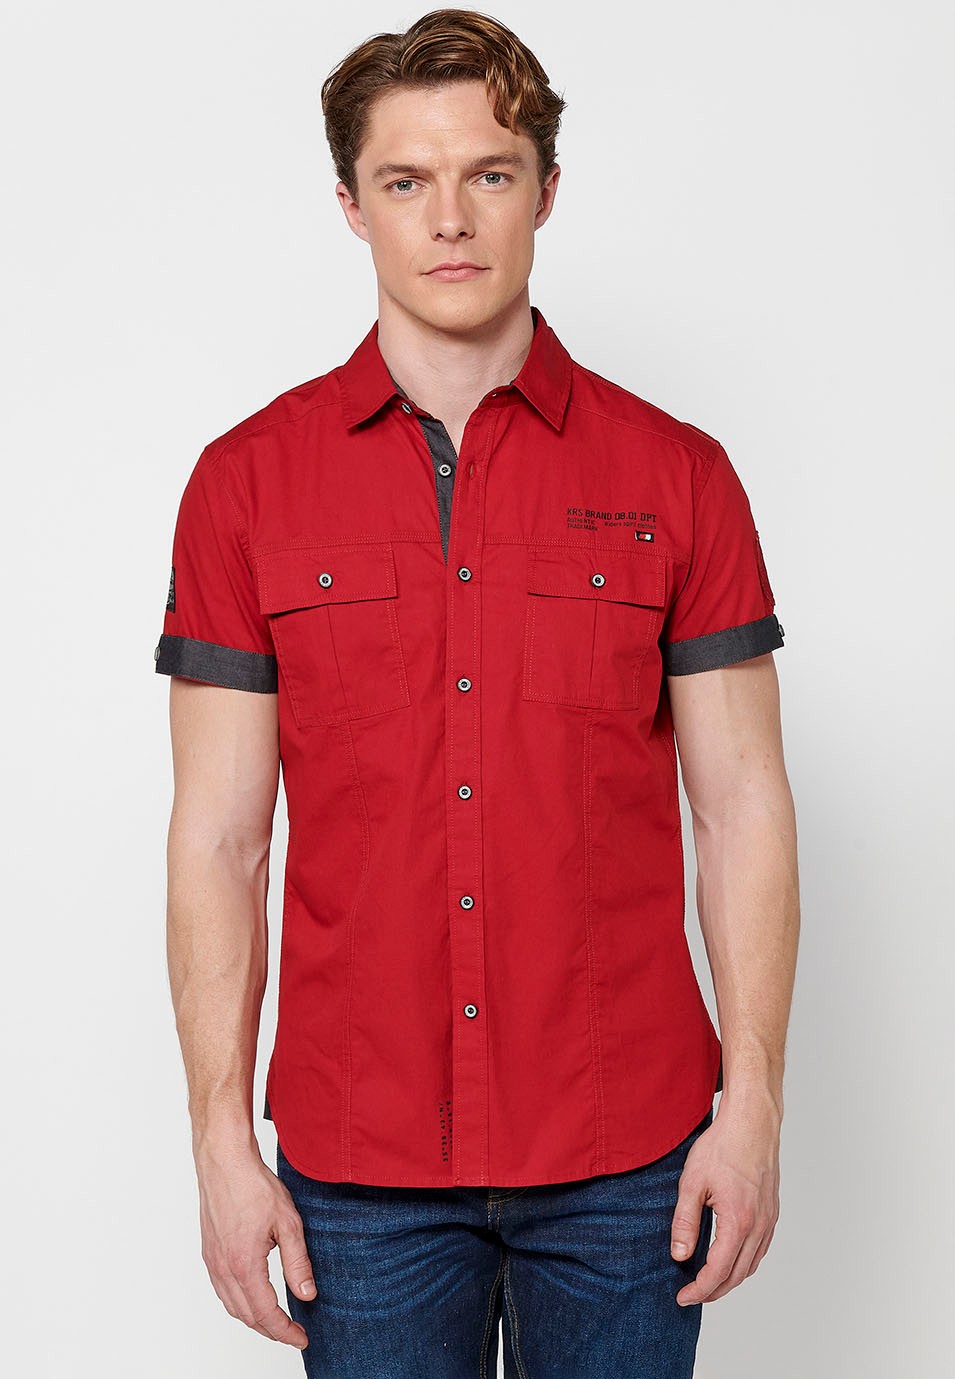 Camisa de manga corta de Algodón con Cierre delantero con botones y Bolsillos delanteros con solapa de Color rojo para Hombre